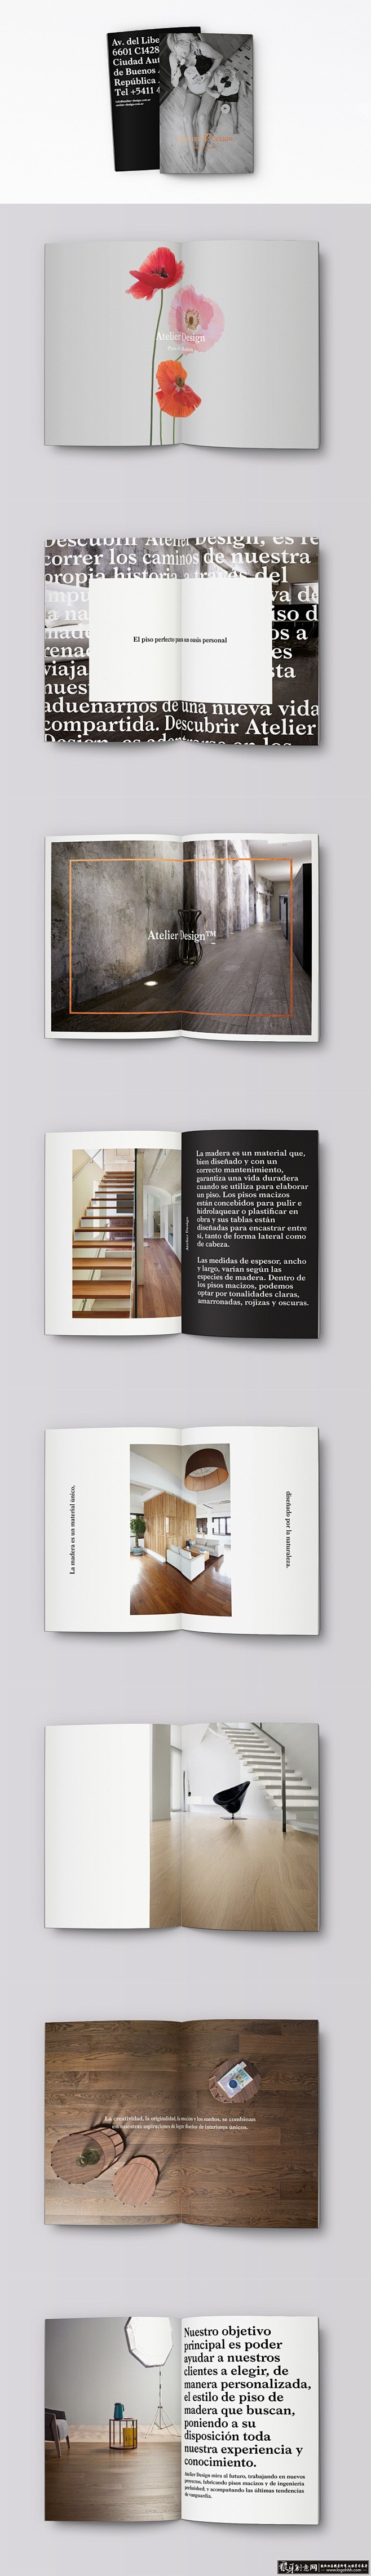 创意画册 地板画册设计 木板画册设计 家...